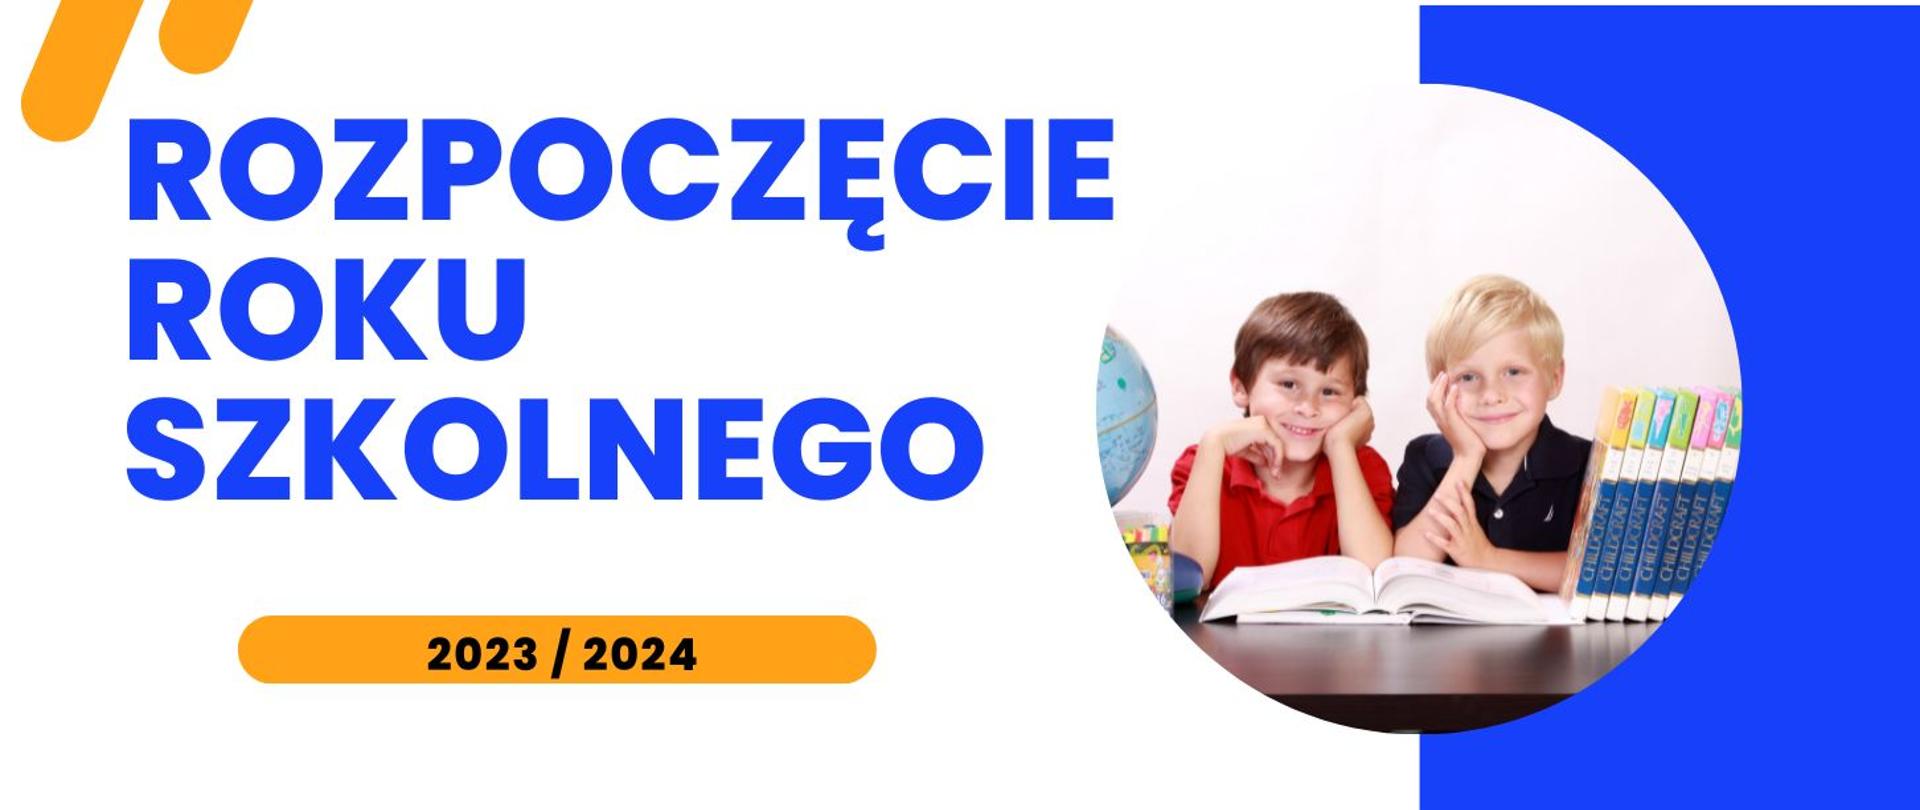 grafika na białym tle z napisem "rozpoczęcie roku szkolnego 2023/2024" po lewej i zdjęciem dwóch chłopców siedzących nad książką po prawej.